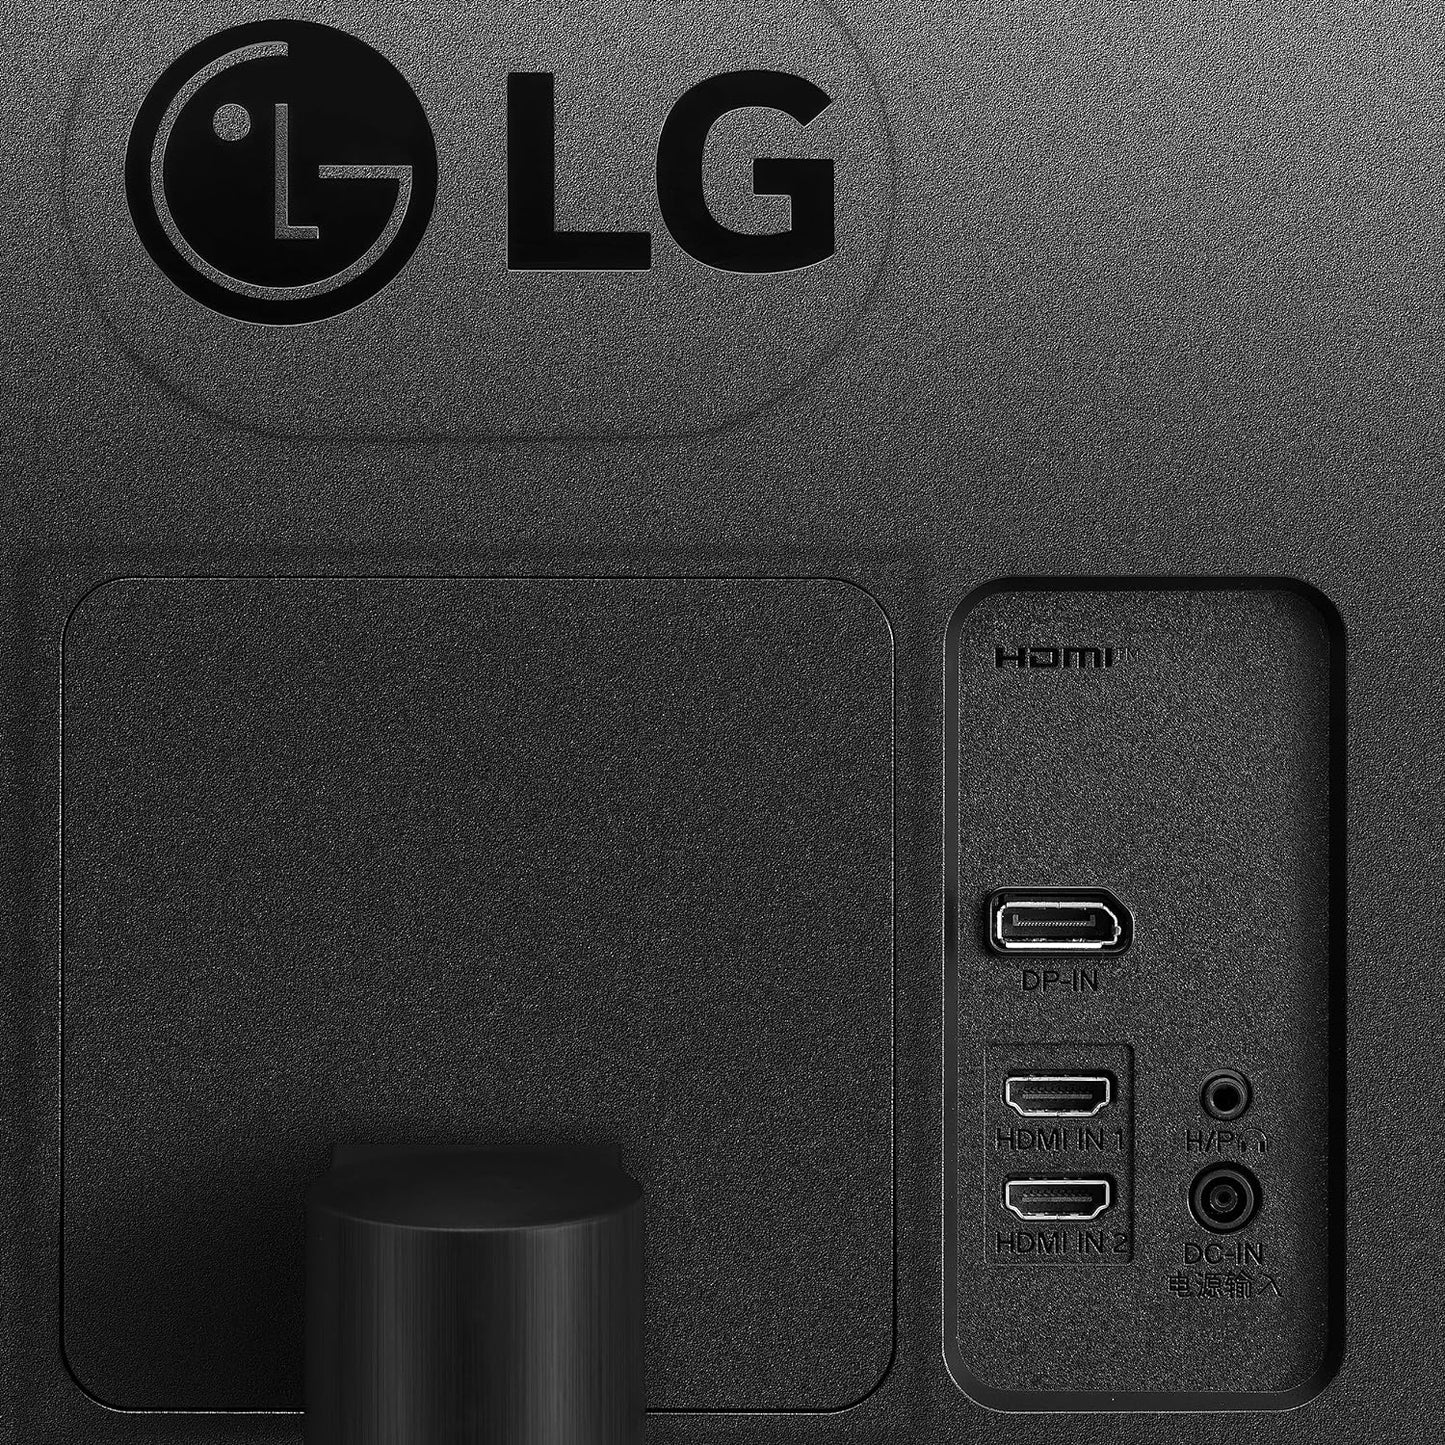 LG 34WR50QC 34" QHD UltraWide Curved Monitor